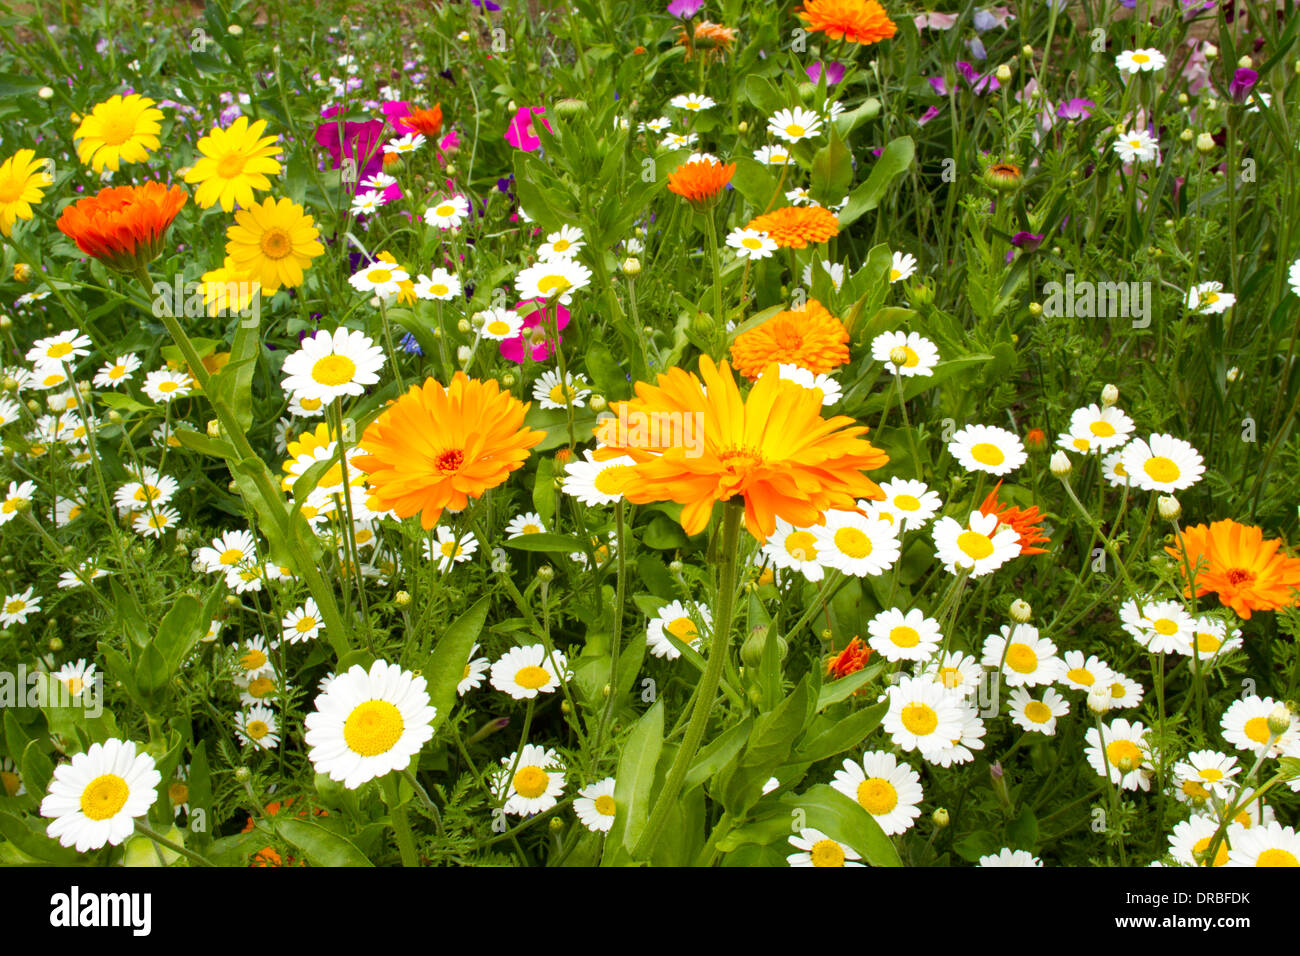 Technique mixte fleurs annuelles (Anthemis, Tagetes, calendula), la floraison dans un jardin frontière. Powys, Pays de Galles. Juillet. Banque D'Images